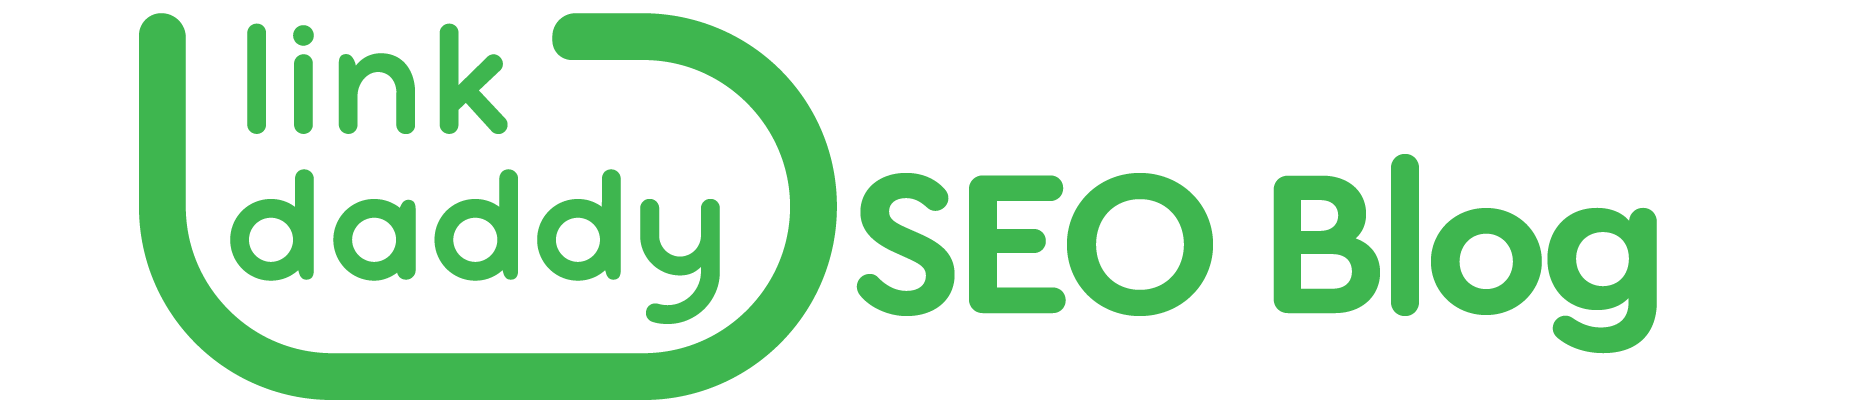 https://storage.googleapis.com/cloudsites/seo-services/8678bruge/img/cropped-linkdaddy-seoblog-logo.png